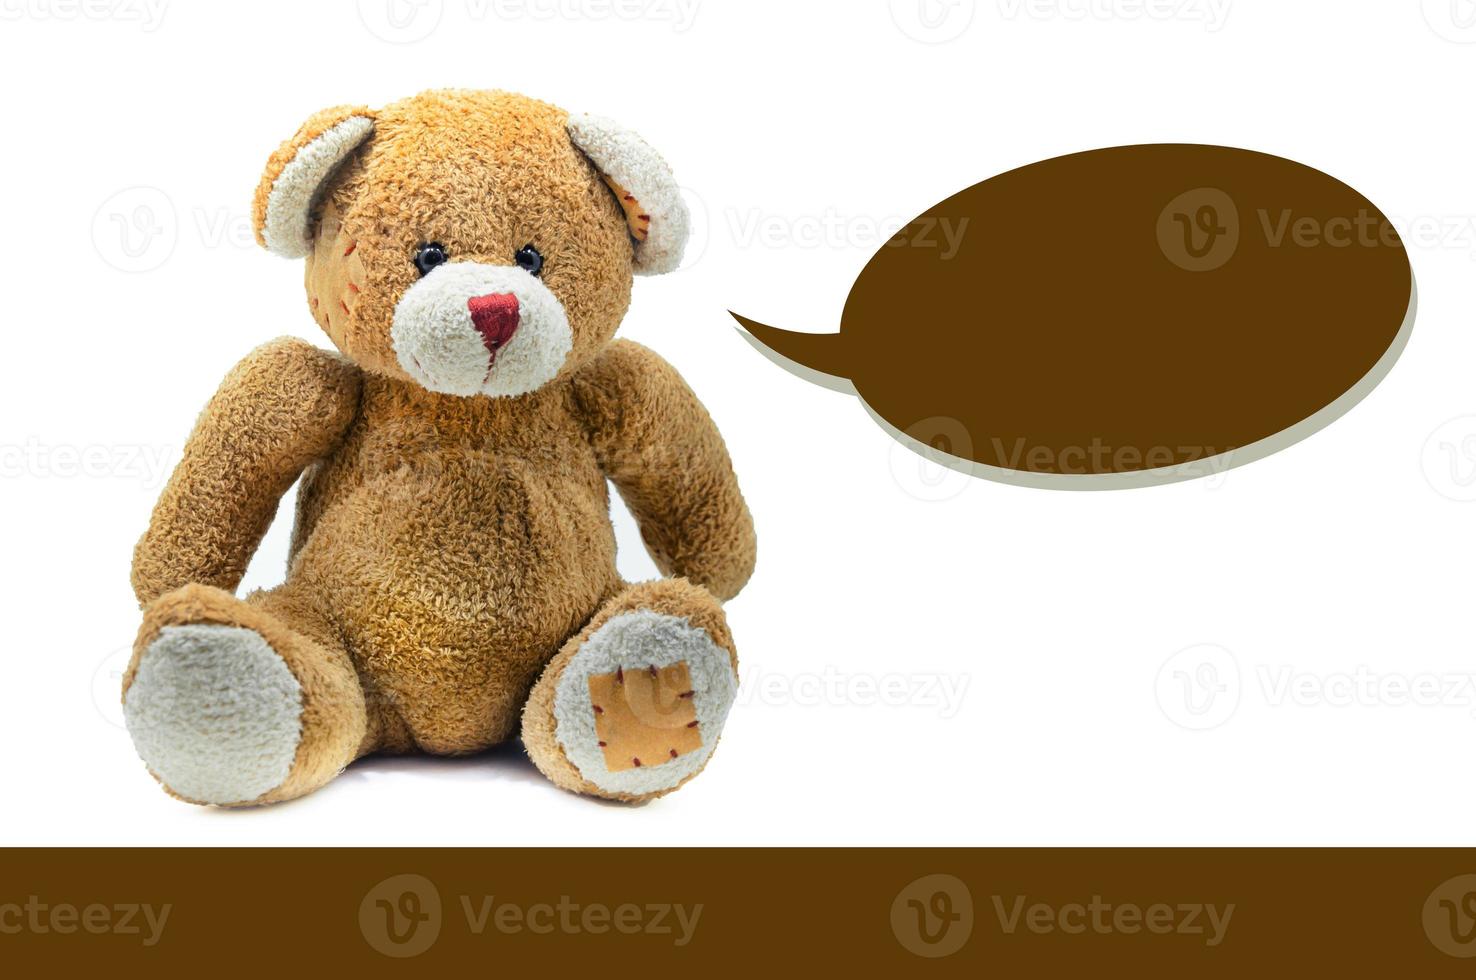 brun teddy Björn leksak Sammanträde på vit bakgrund foto